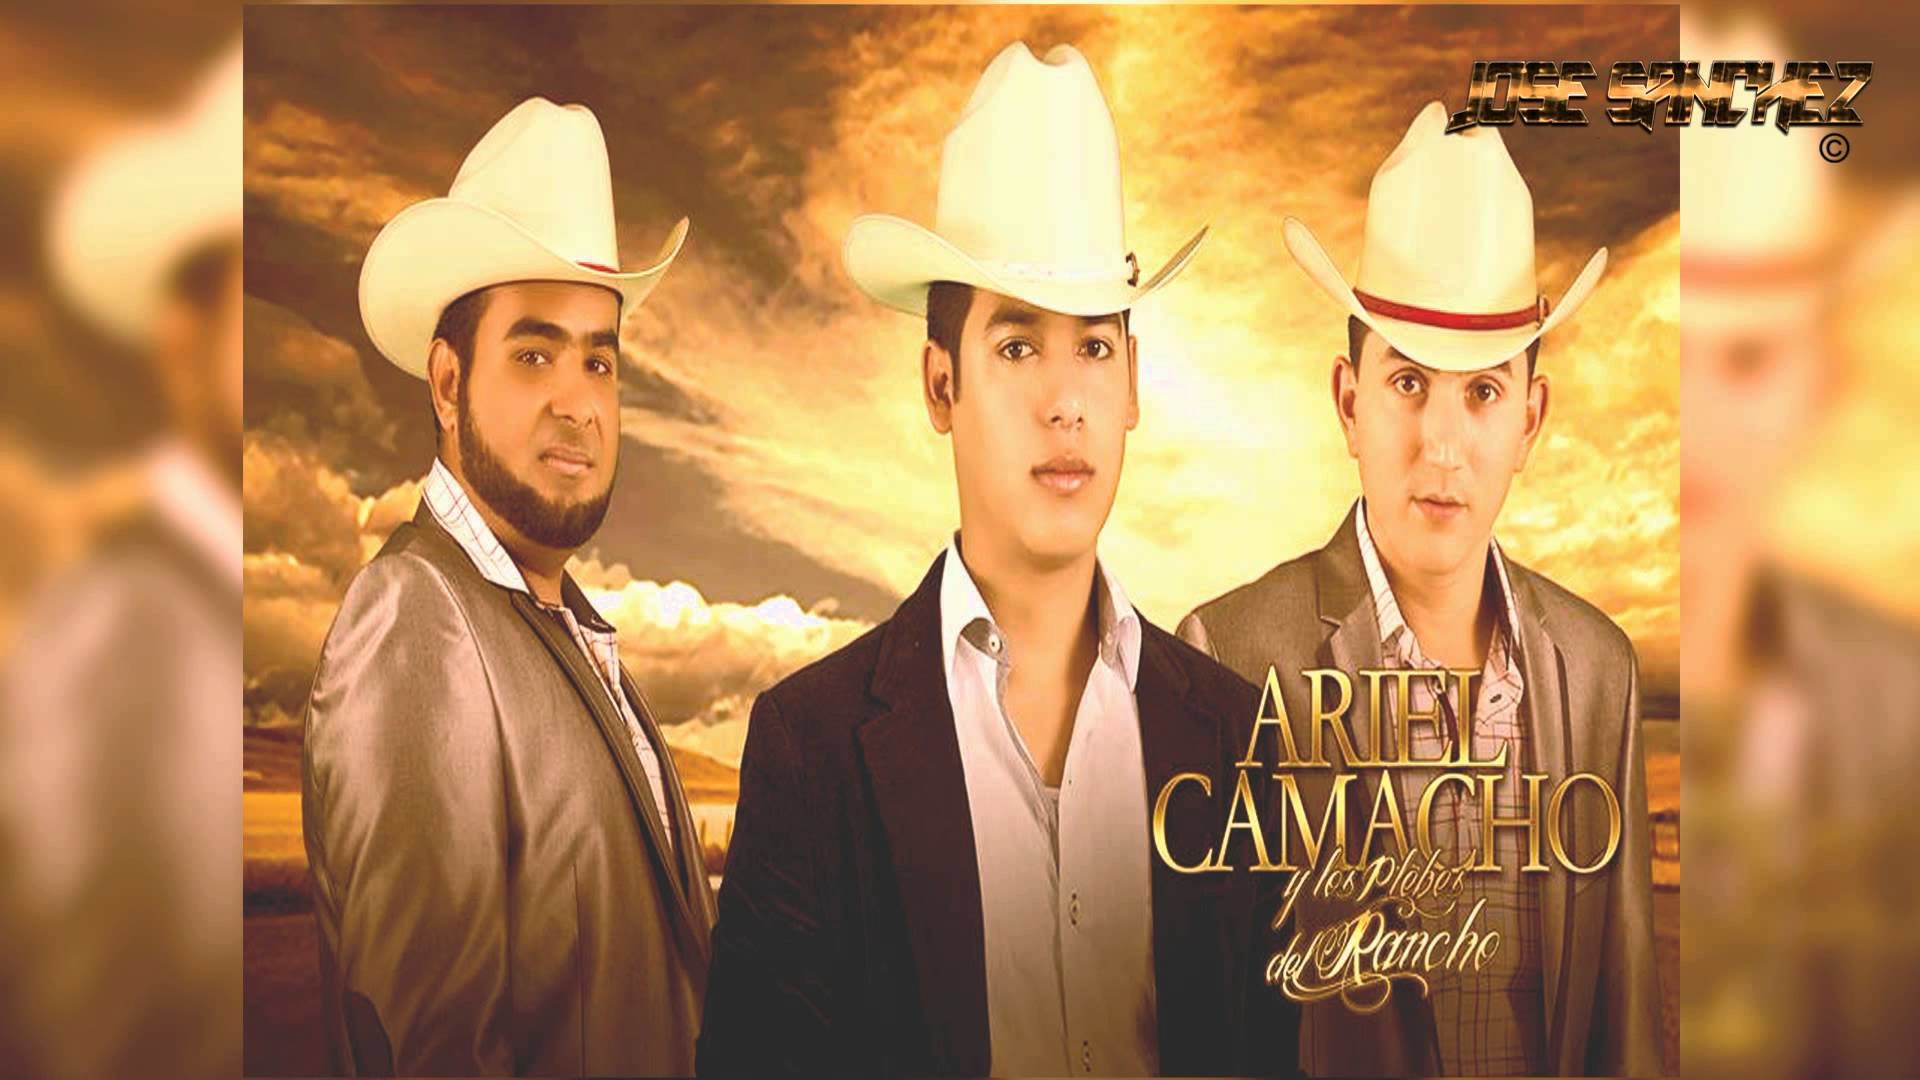 1920x1080 Ariel Camacho y Los Plebes Del Rancho - El Hueso Duro (El Prieto)